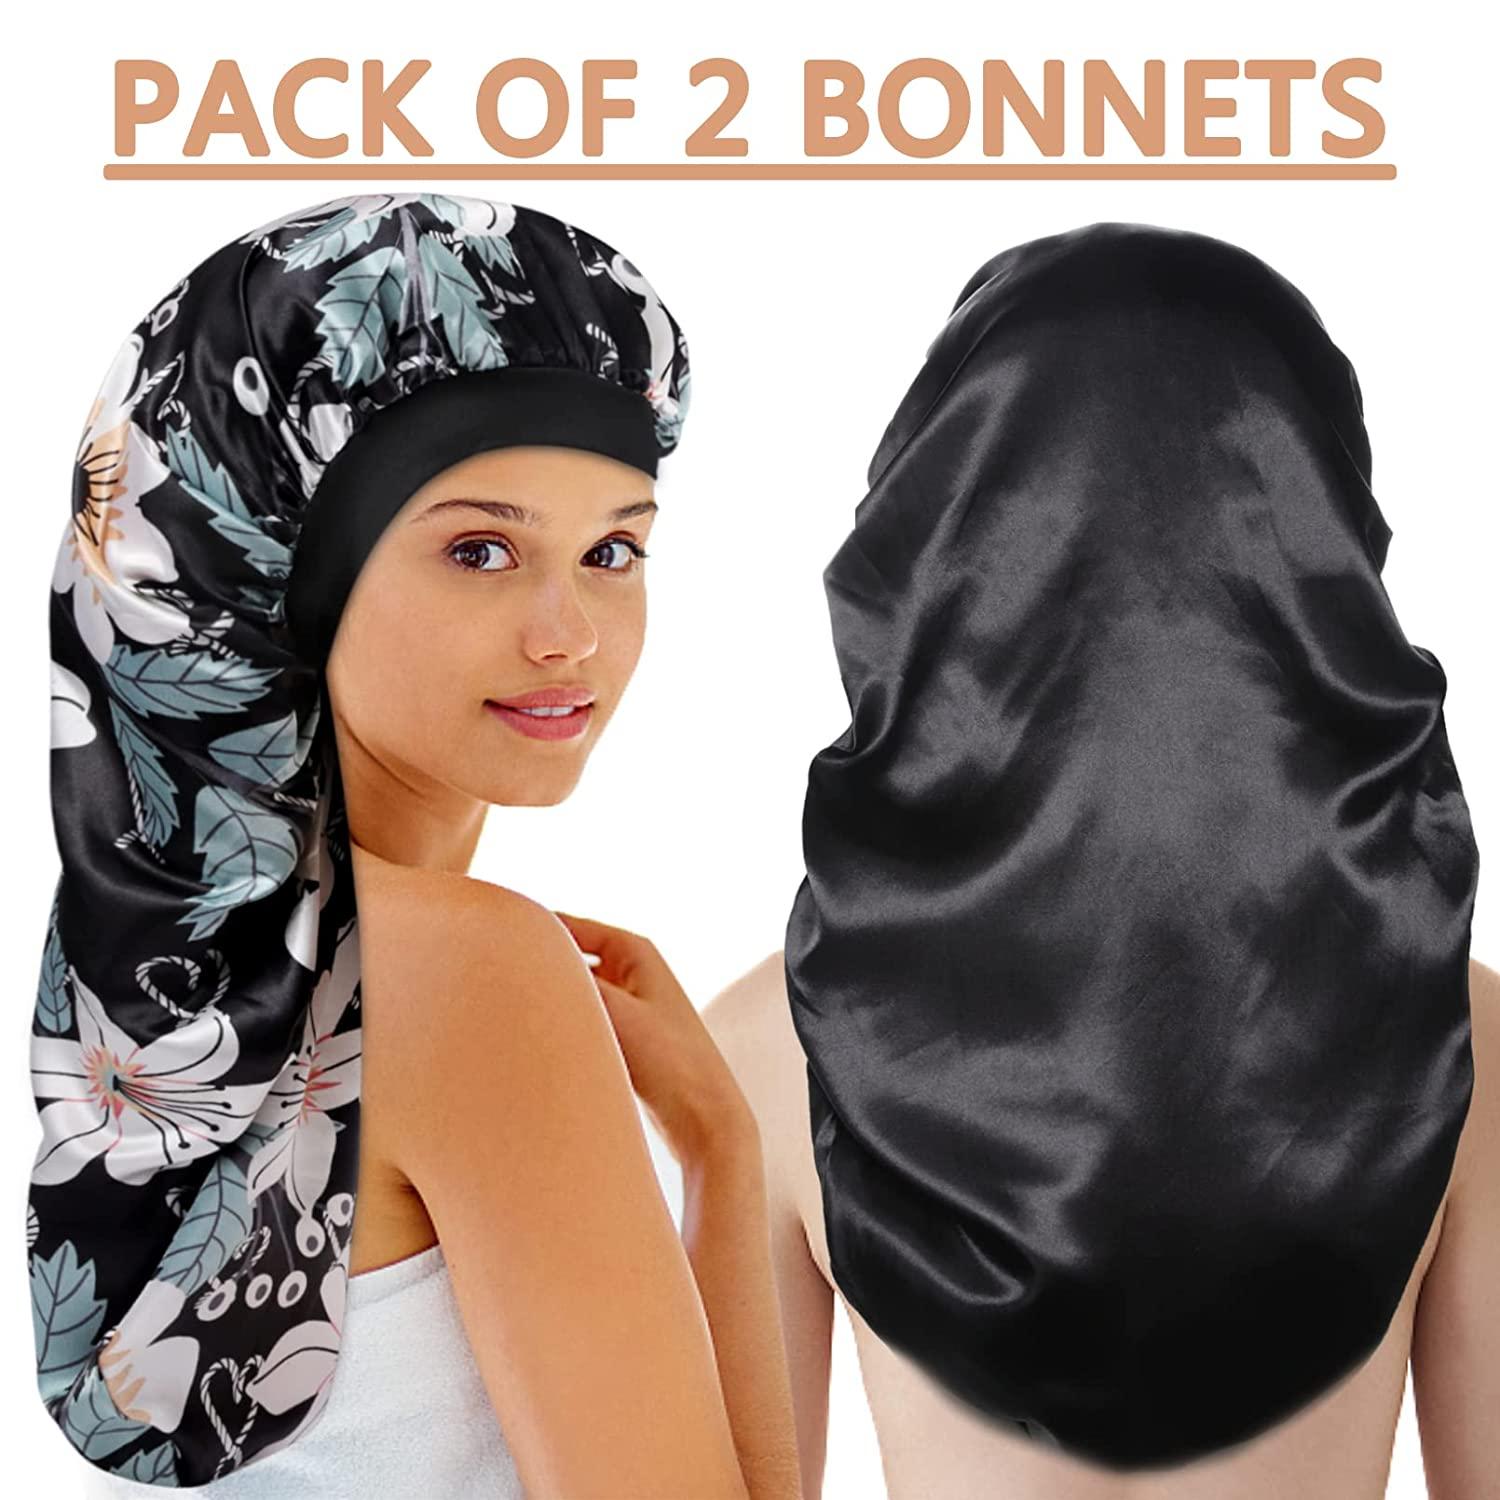 Silk Bonnet for Natural Hair Bonnets for Black Women, Satin Bonnet for Long  Hair Cap for Sleeping, Large Silk Hair Wrap for Curly Hair Bonnet for  Sleeping 